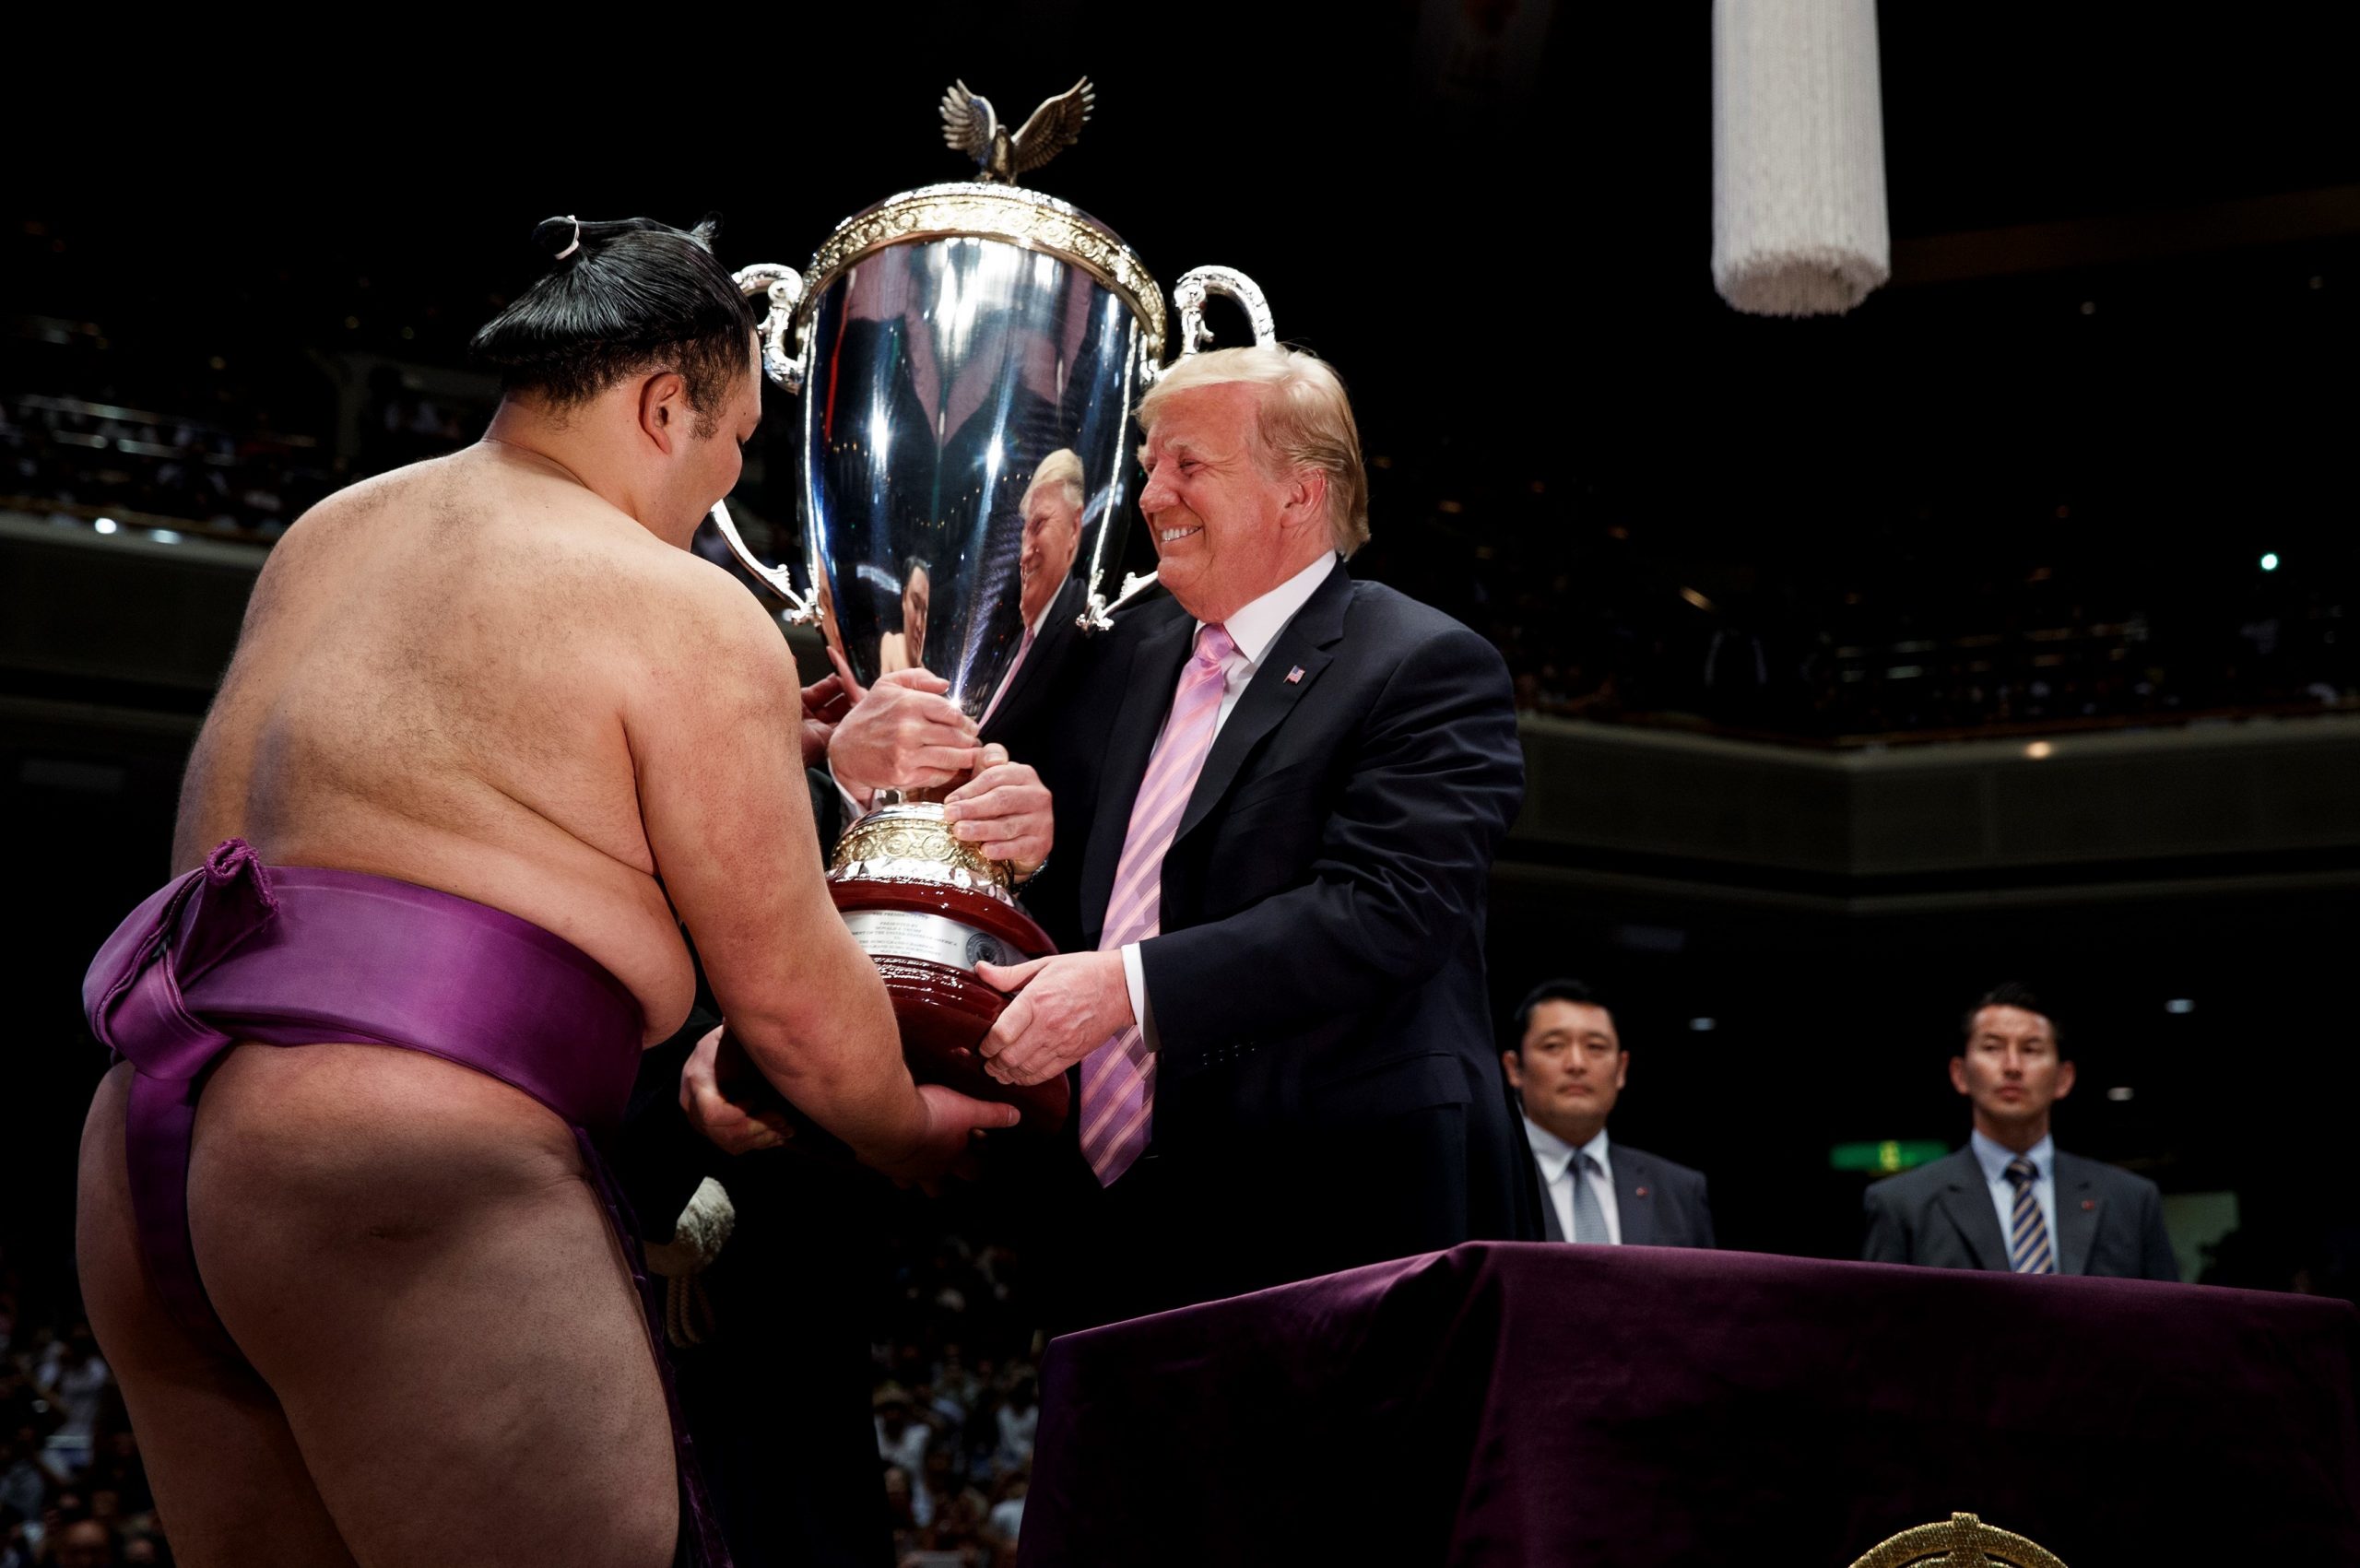 "Trump Cup"